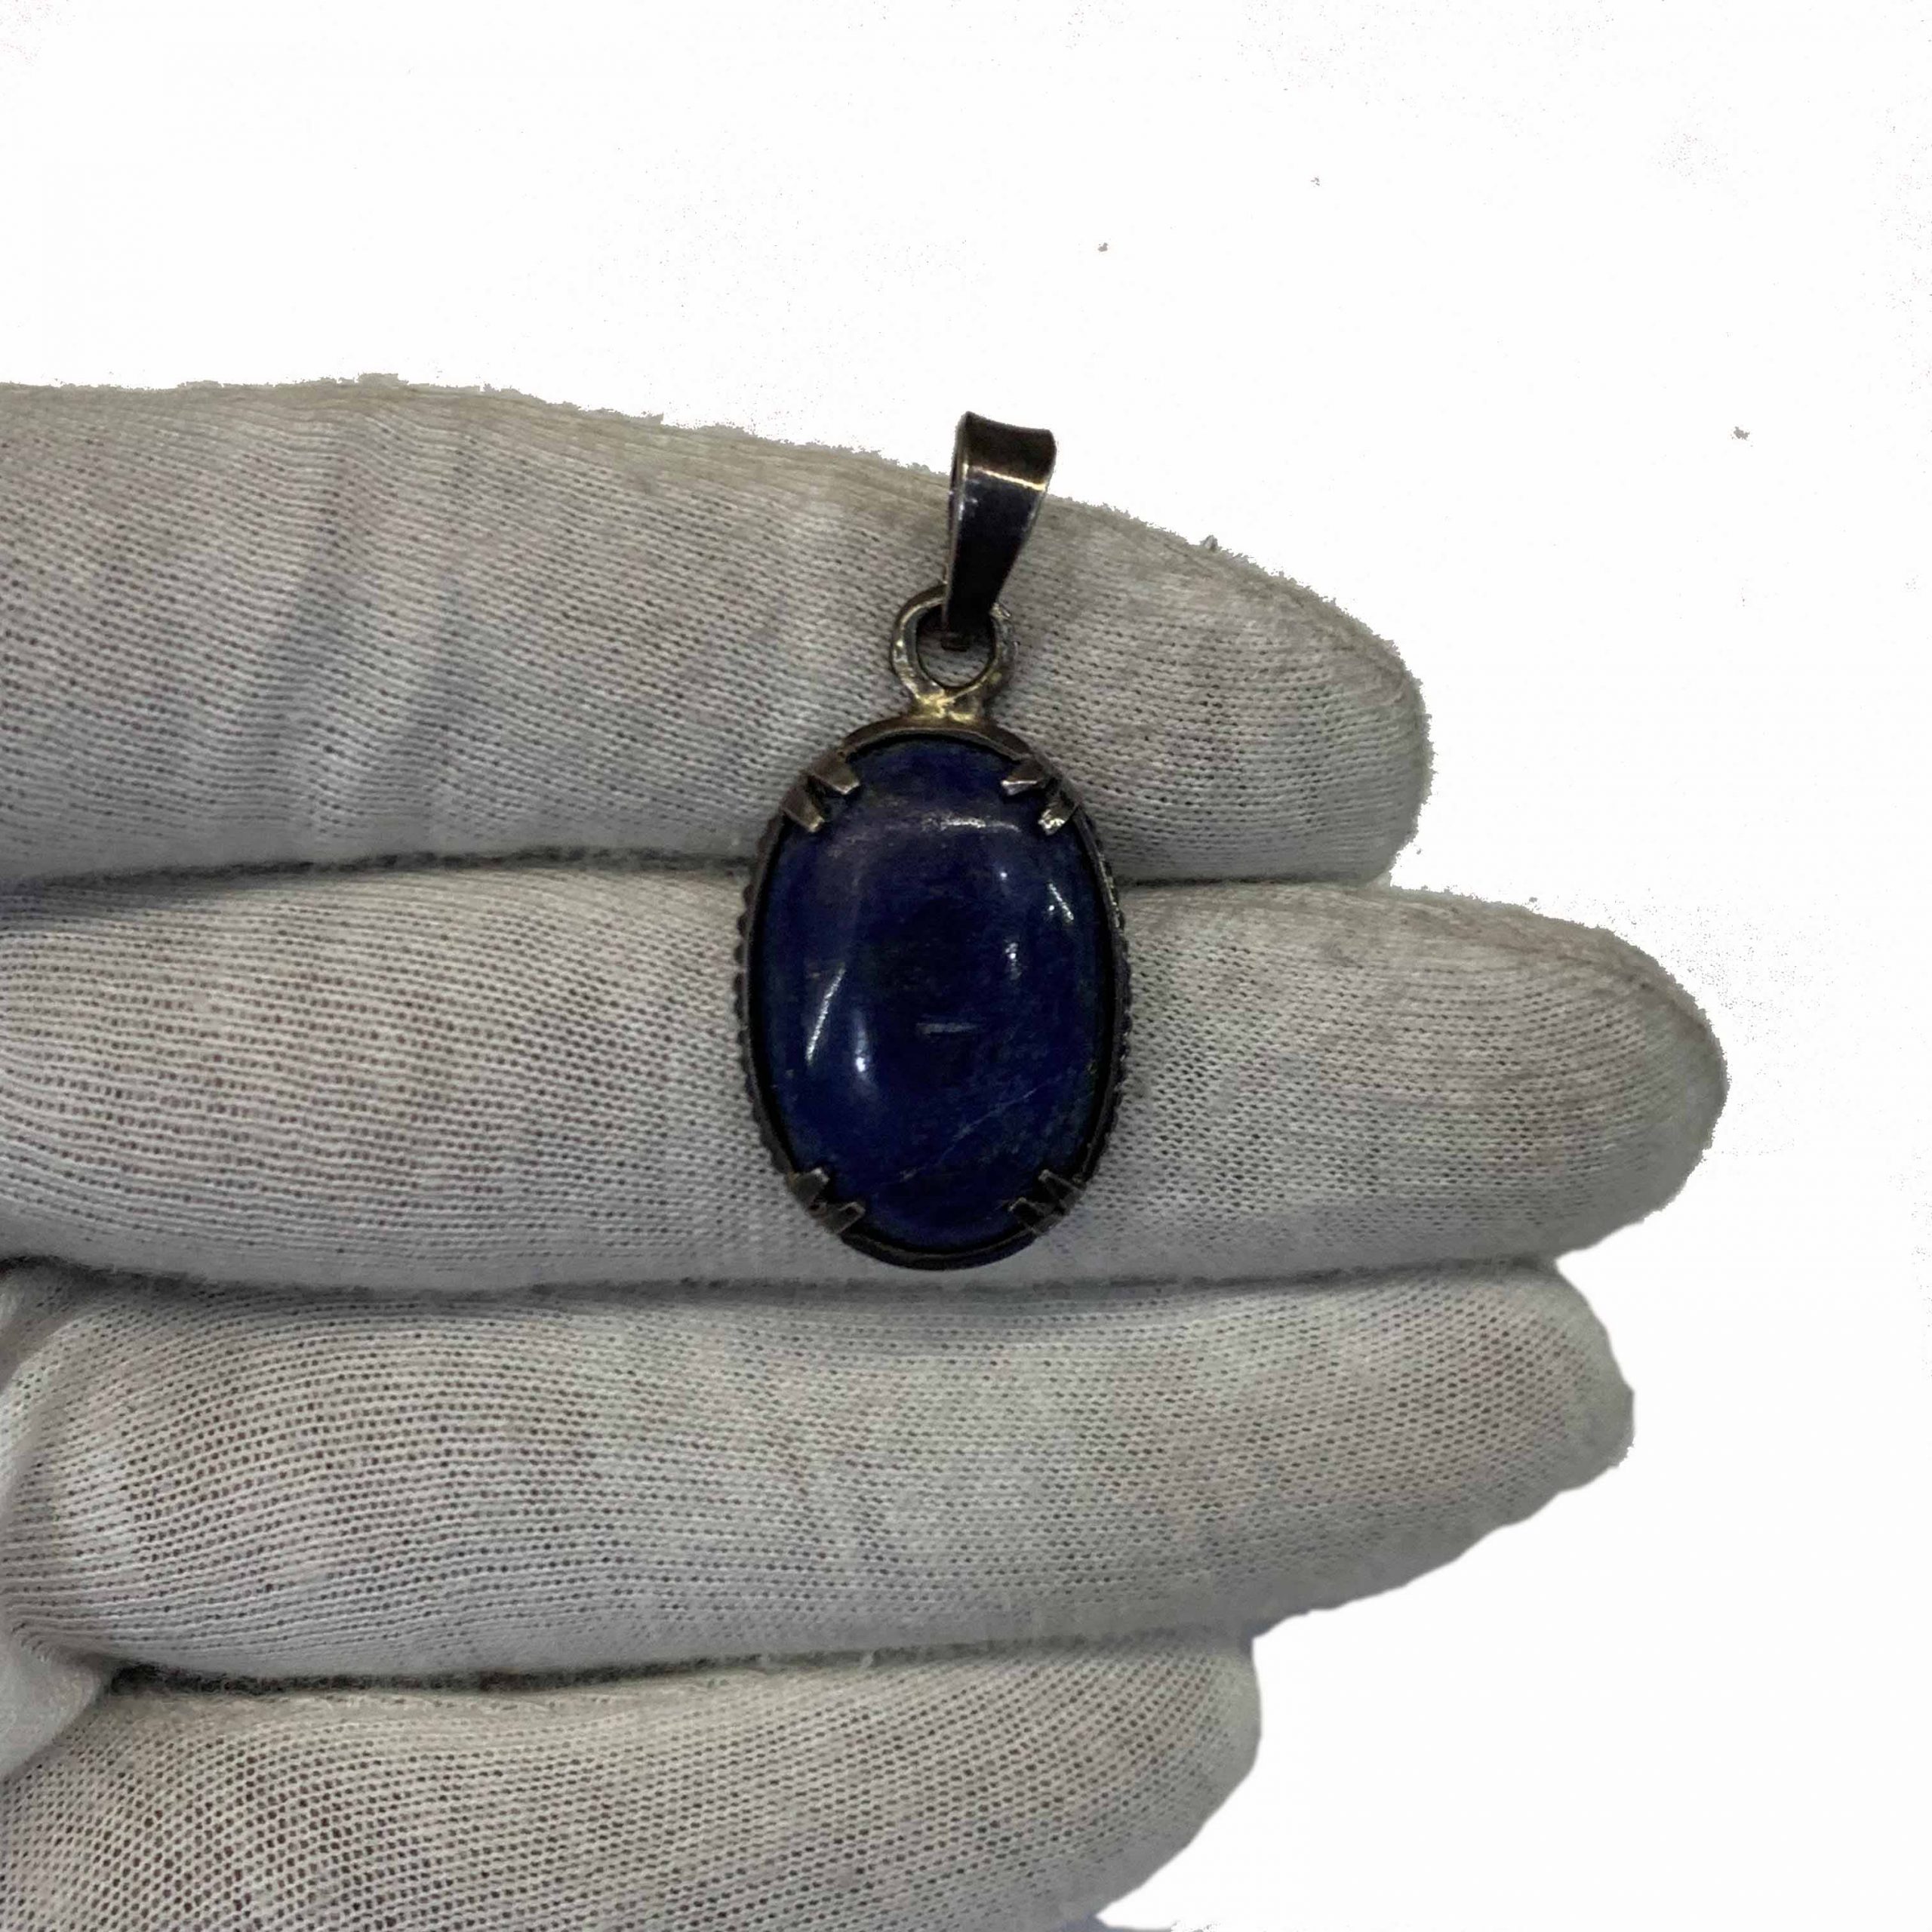 Lapis Lazuli locket